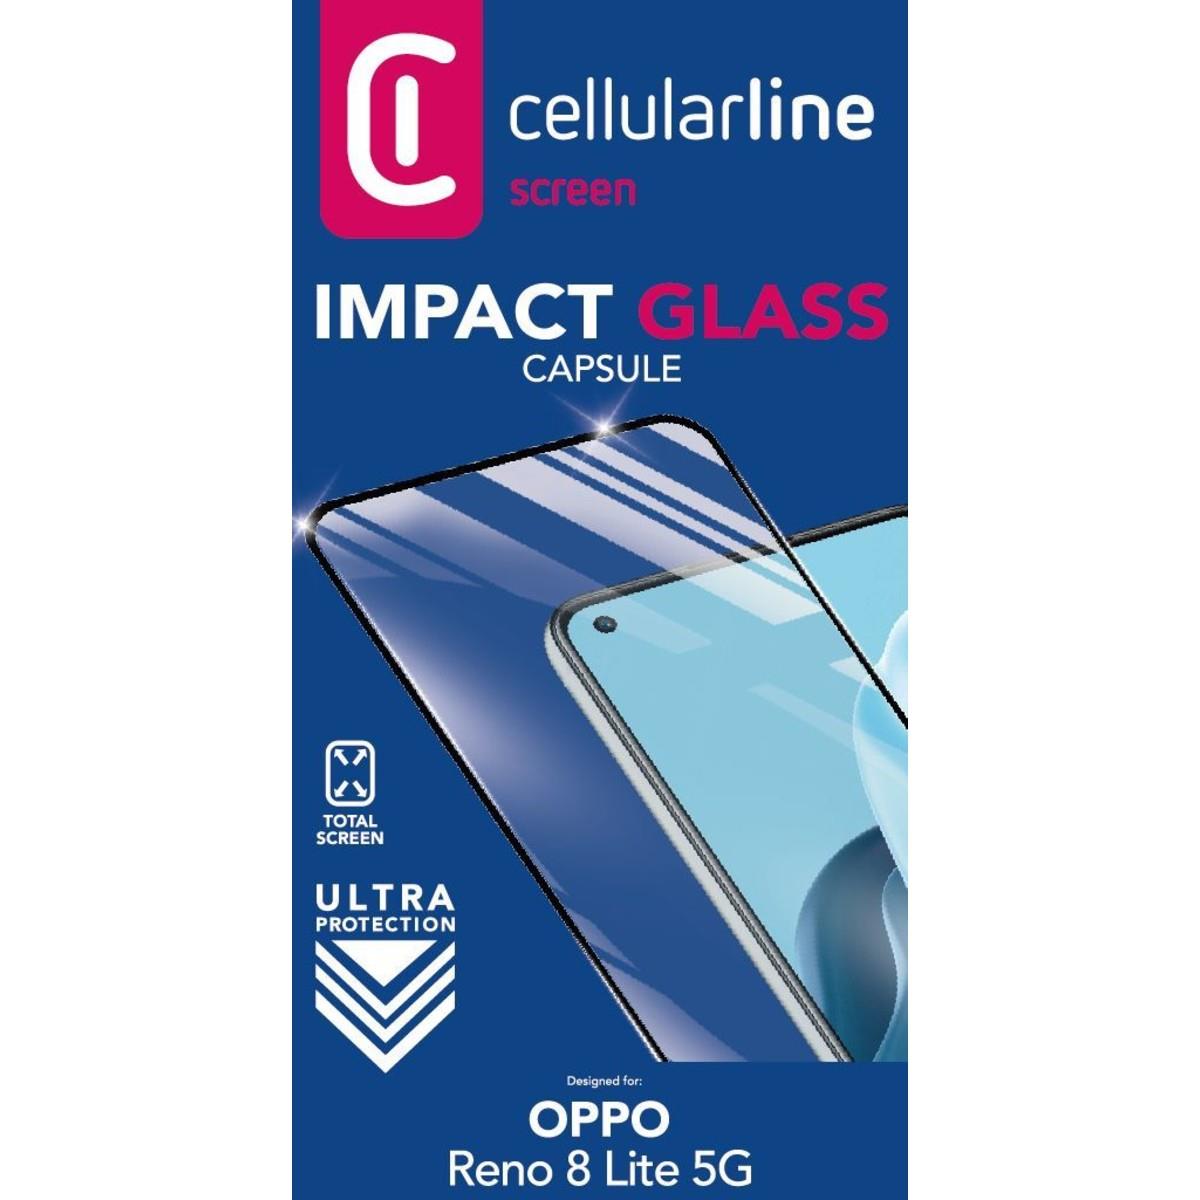 Schutzglas IMPACT GLASS CAPSULE für Oppo Reno 8 Lite 5G